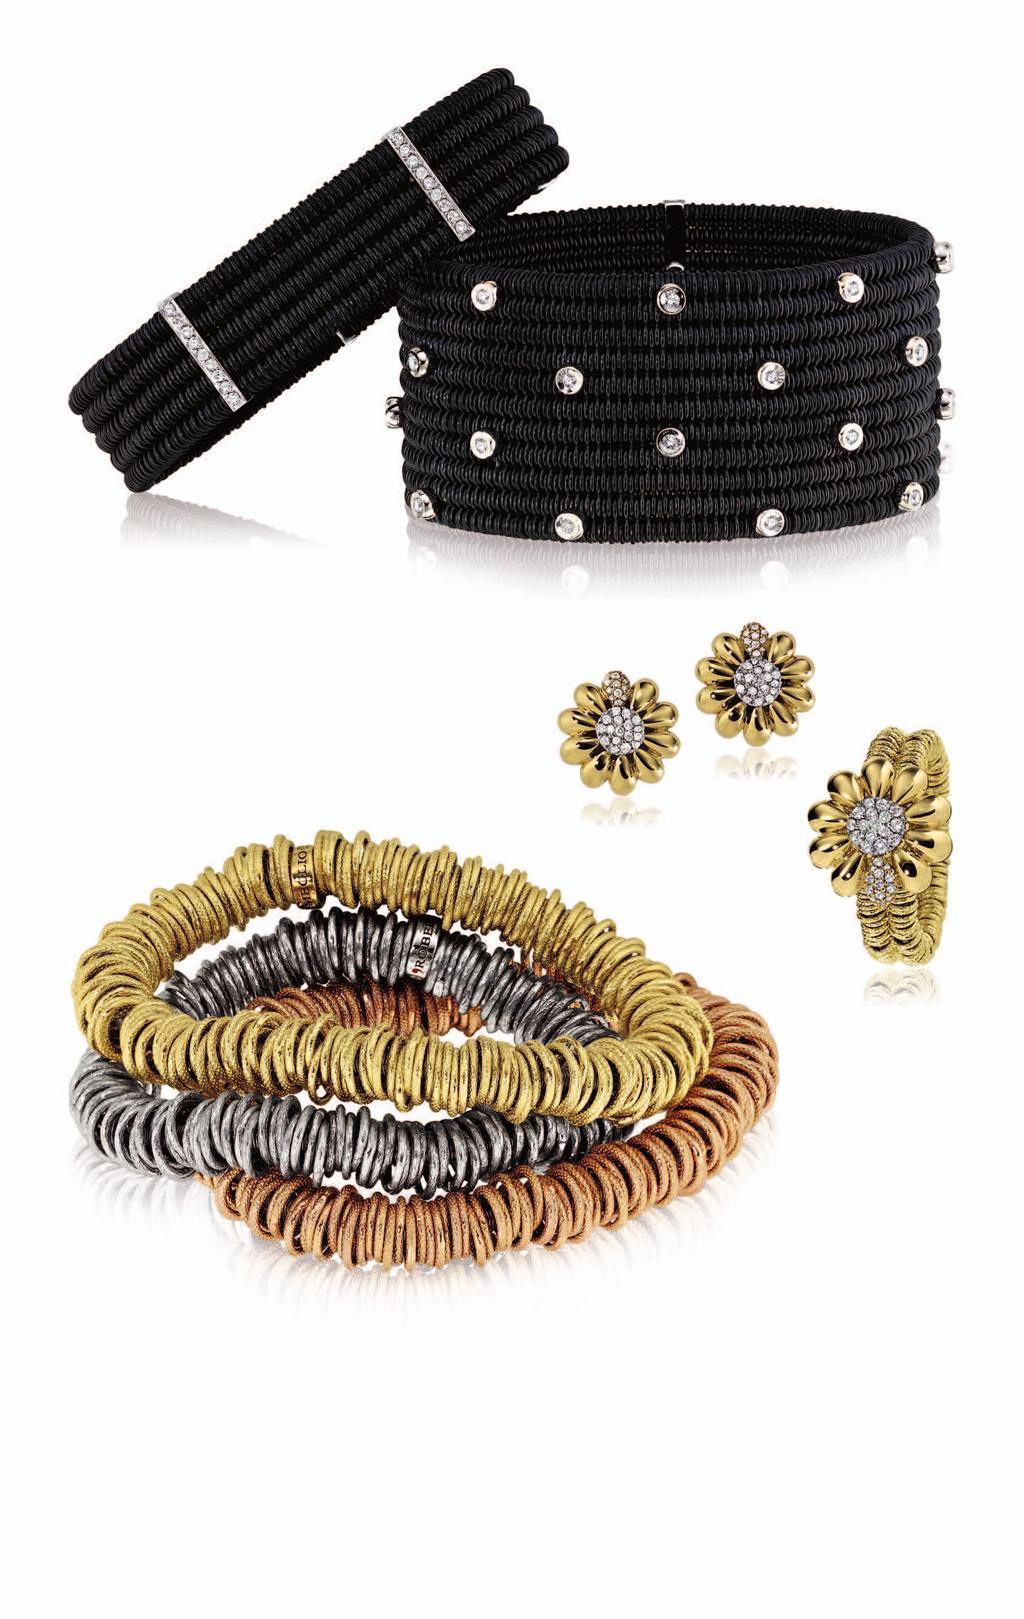 A A. xpandable black ceramic bracelet with diamonds, $3,650. xpandable black ceramic bracelet with diamonds, $5,595.